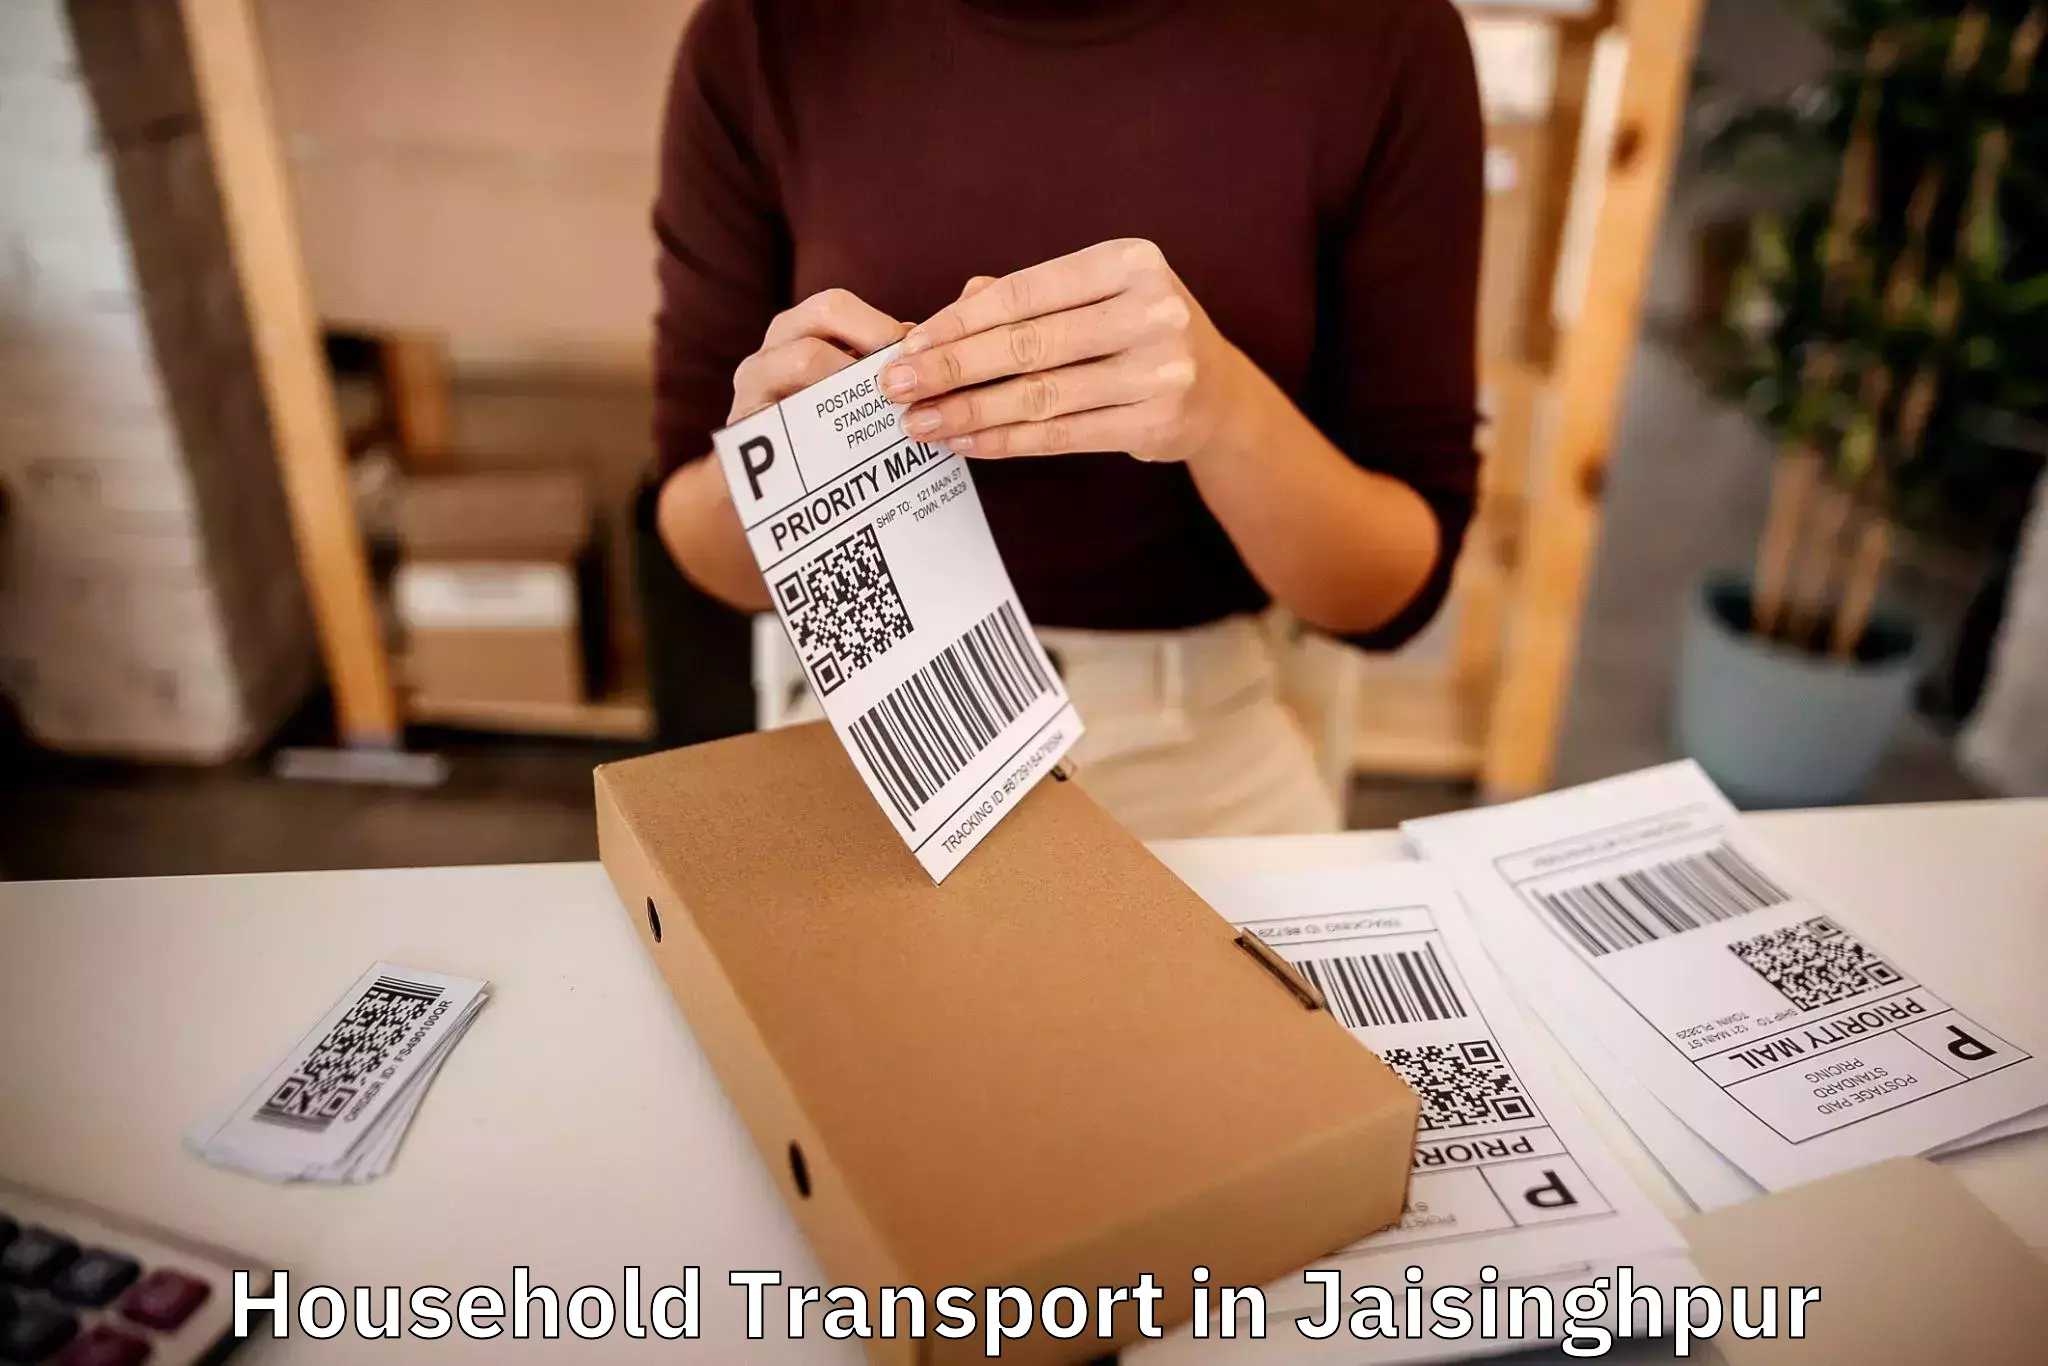 Furniture transport services in Jaisinghpur